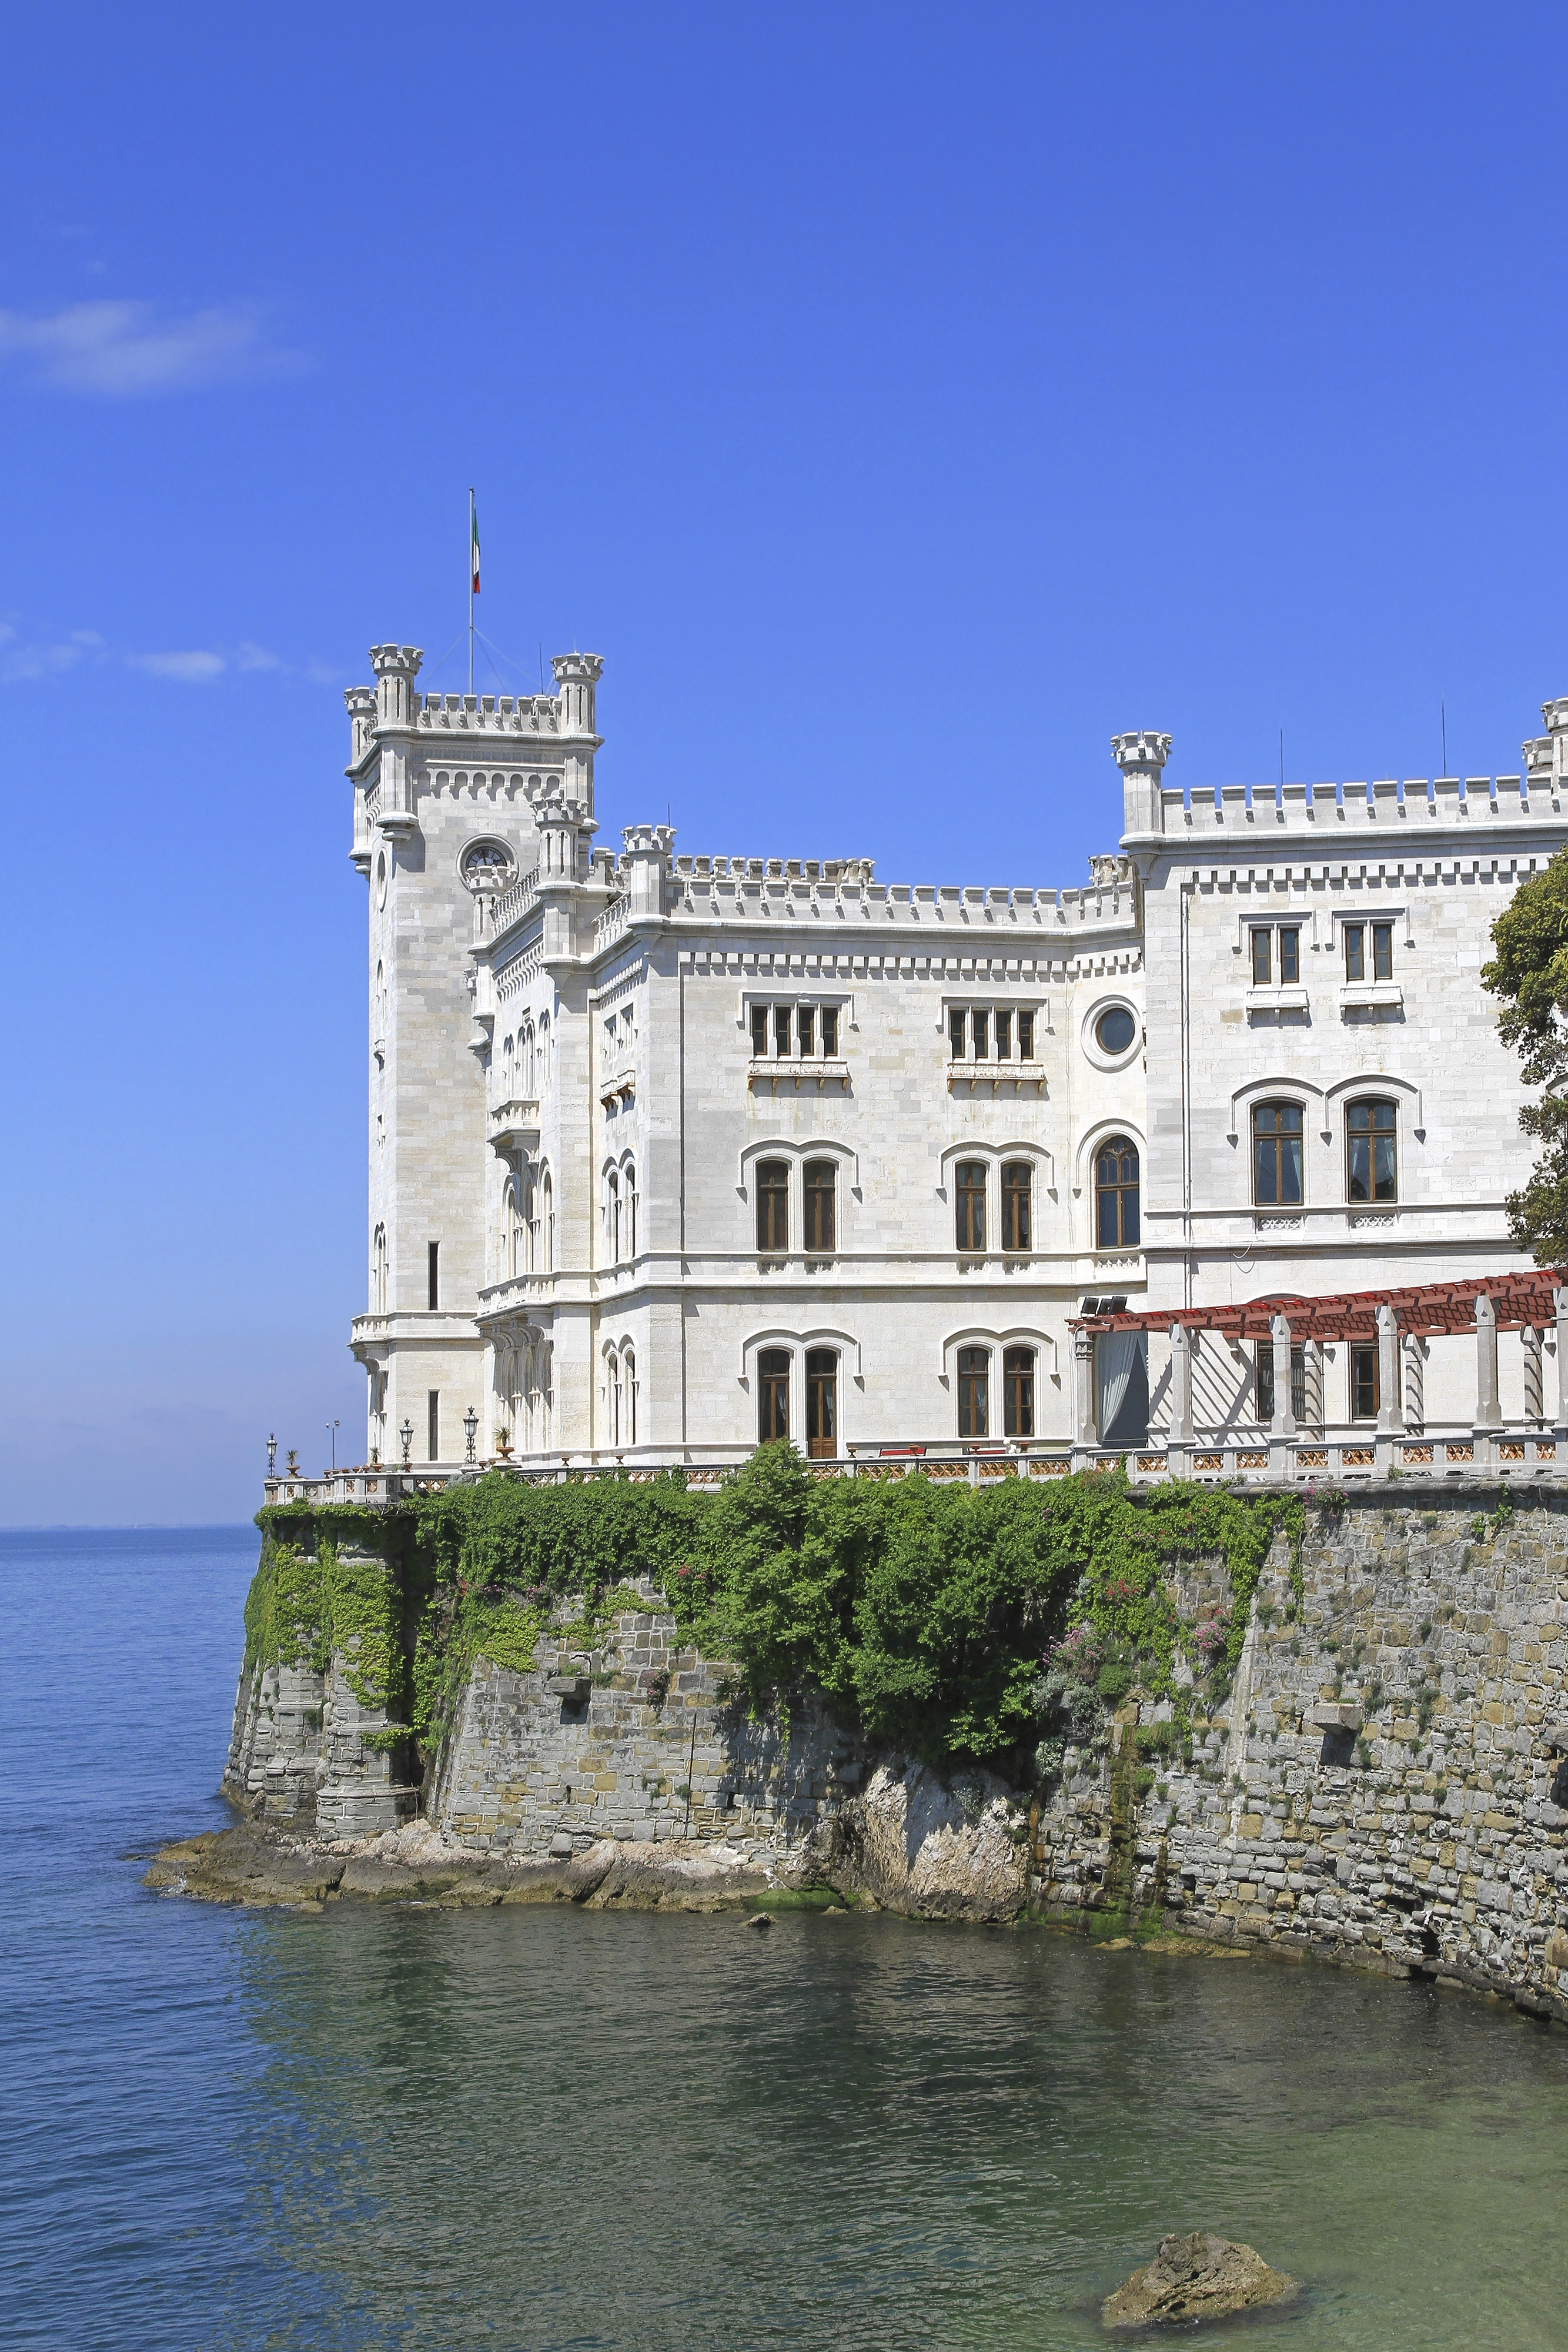 Castello di Miramare | Trieste, Italy Attractions - Lonely Planet